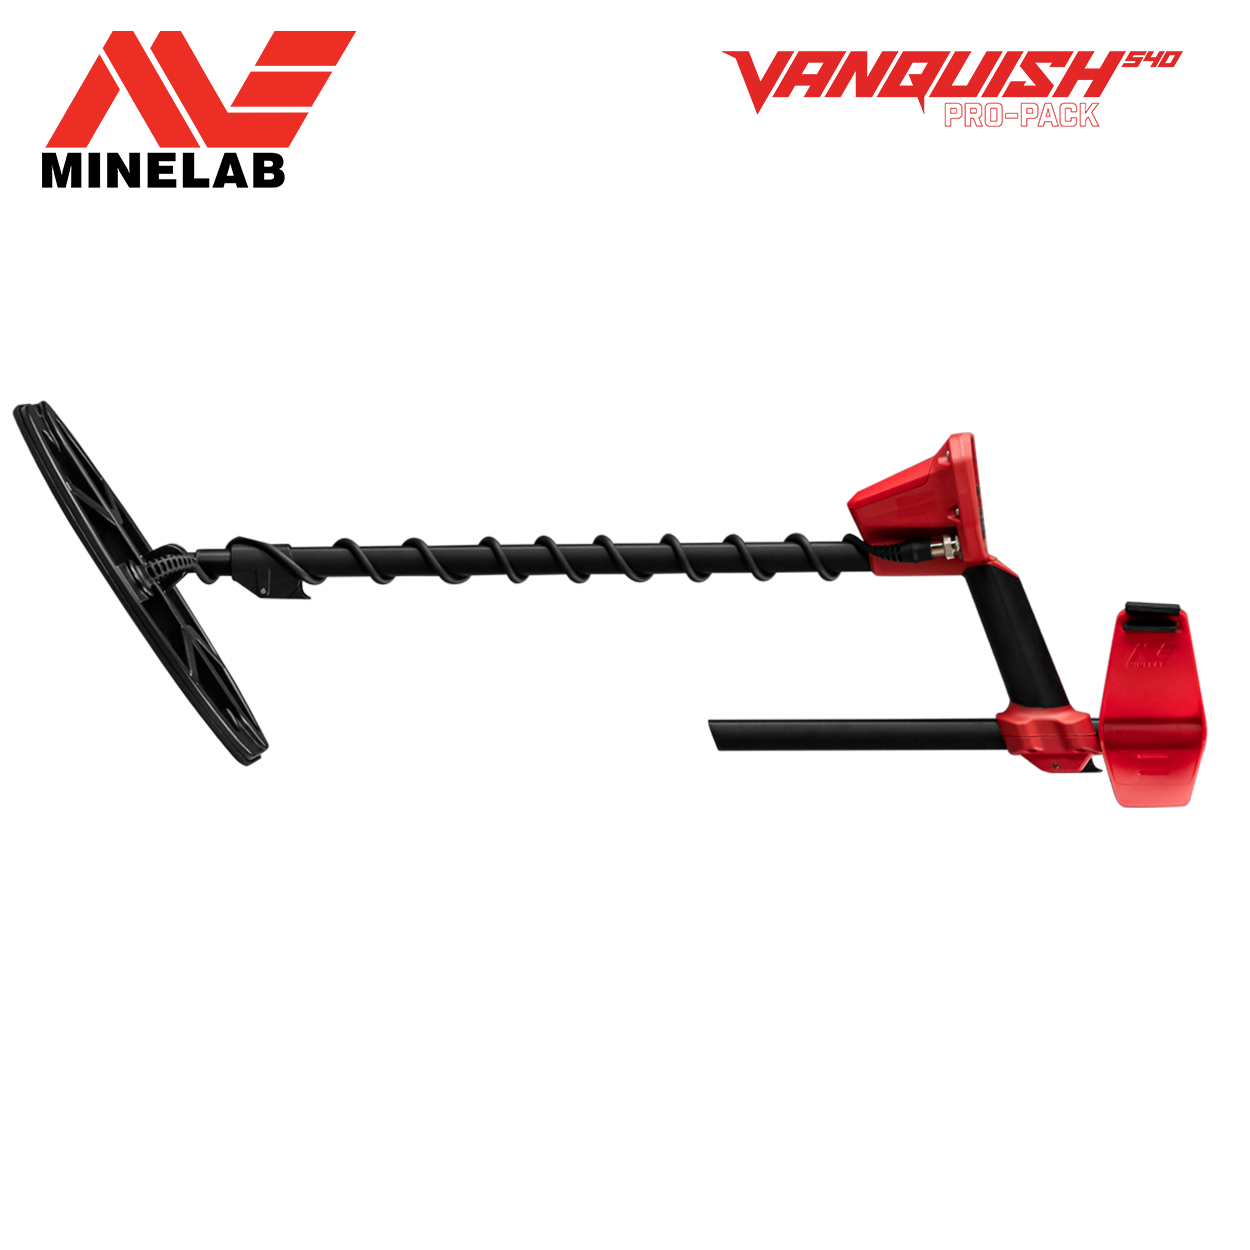 MINELAB Vanquish 540 Metalldetektor Multifrequenz Paket Pro